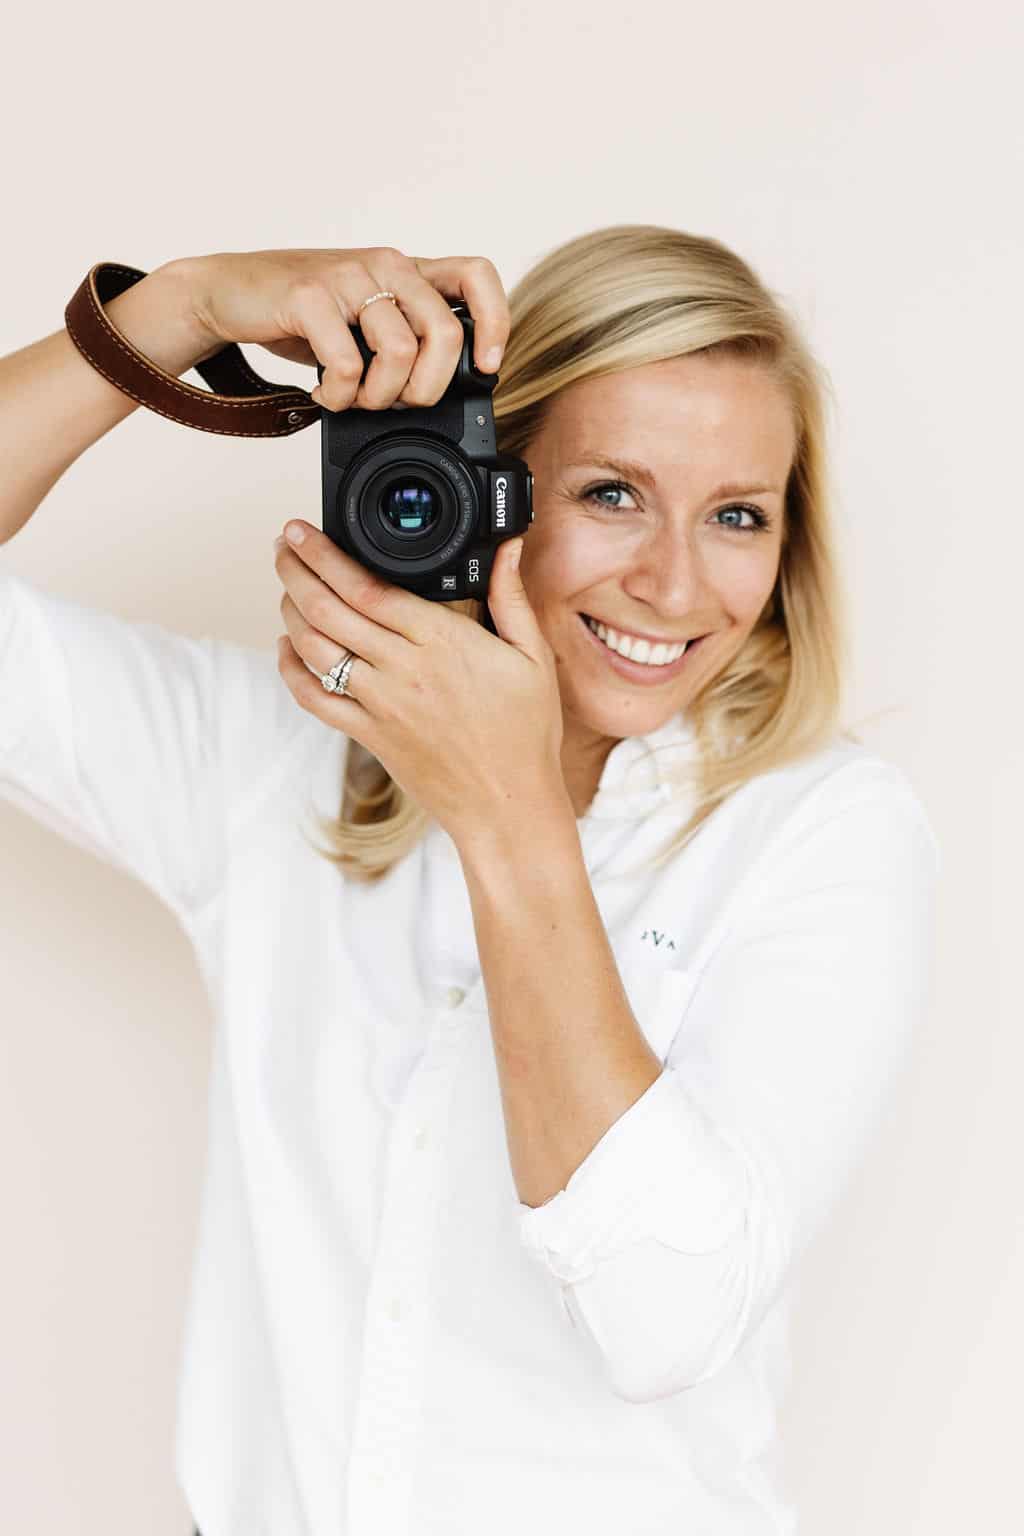 Jessica Vogl holding a camera